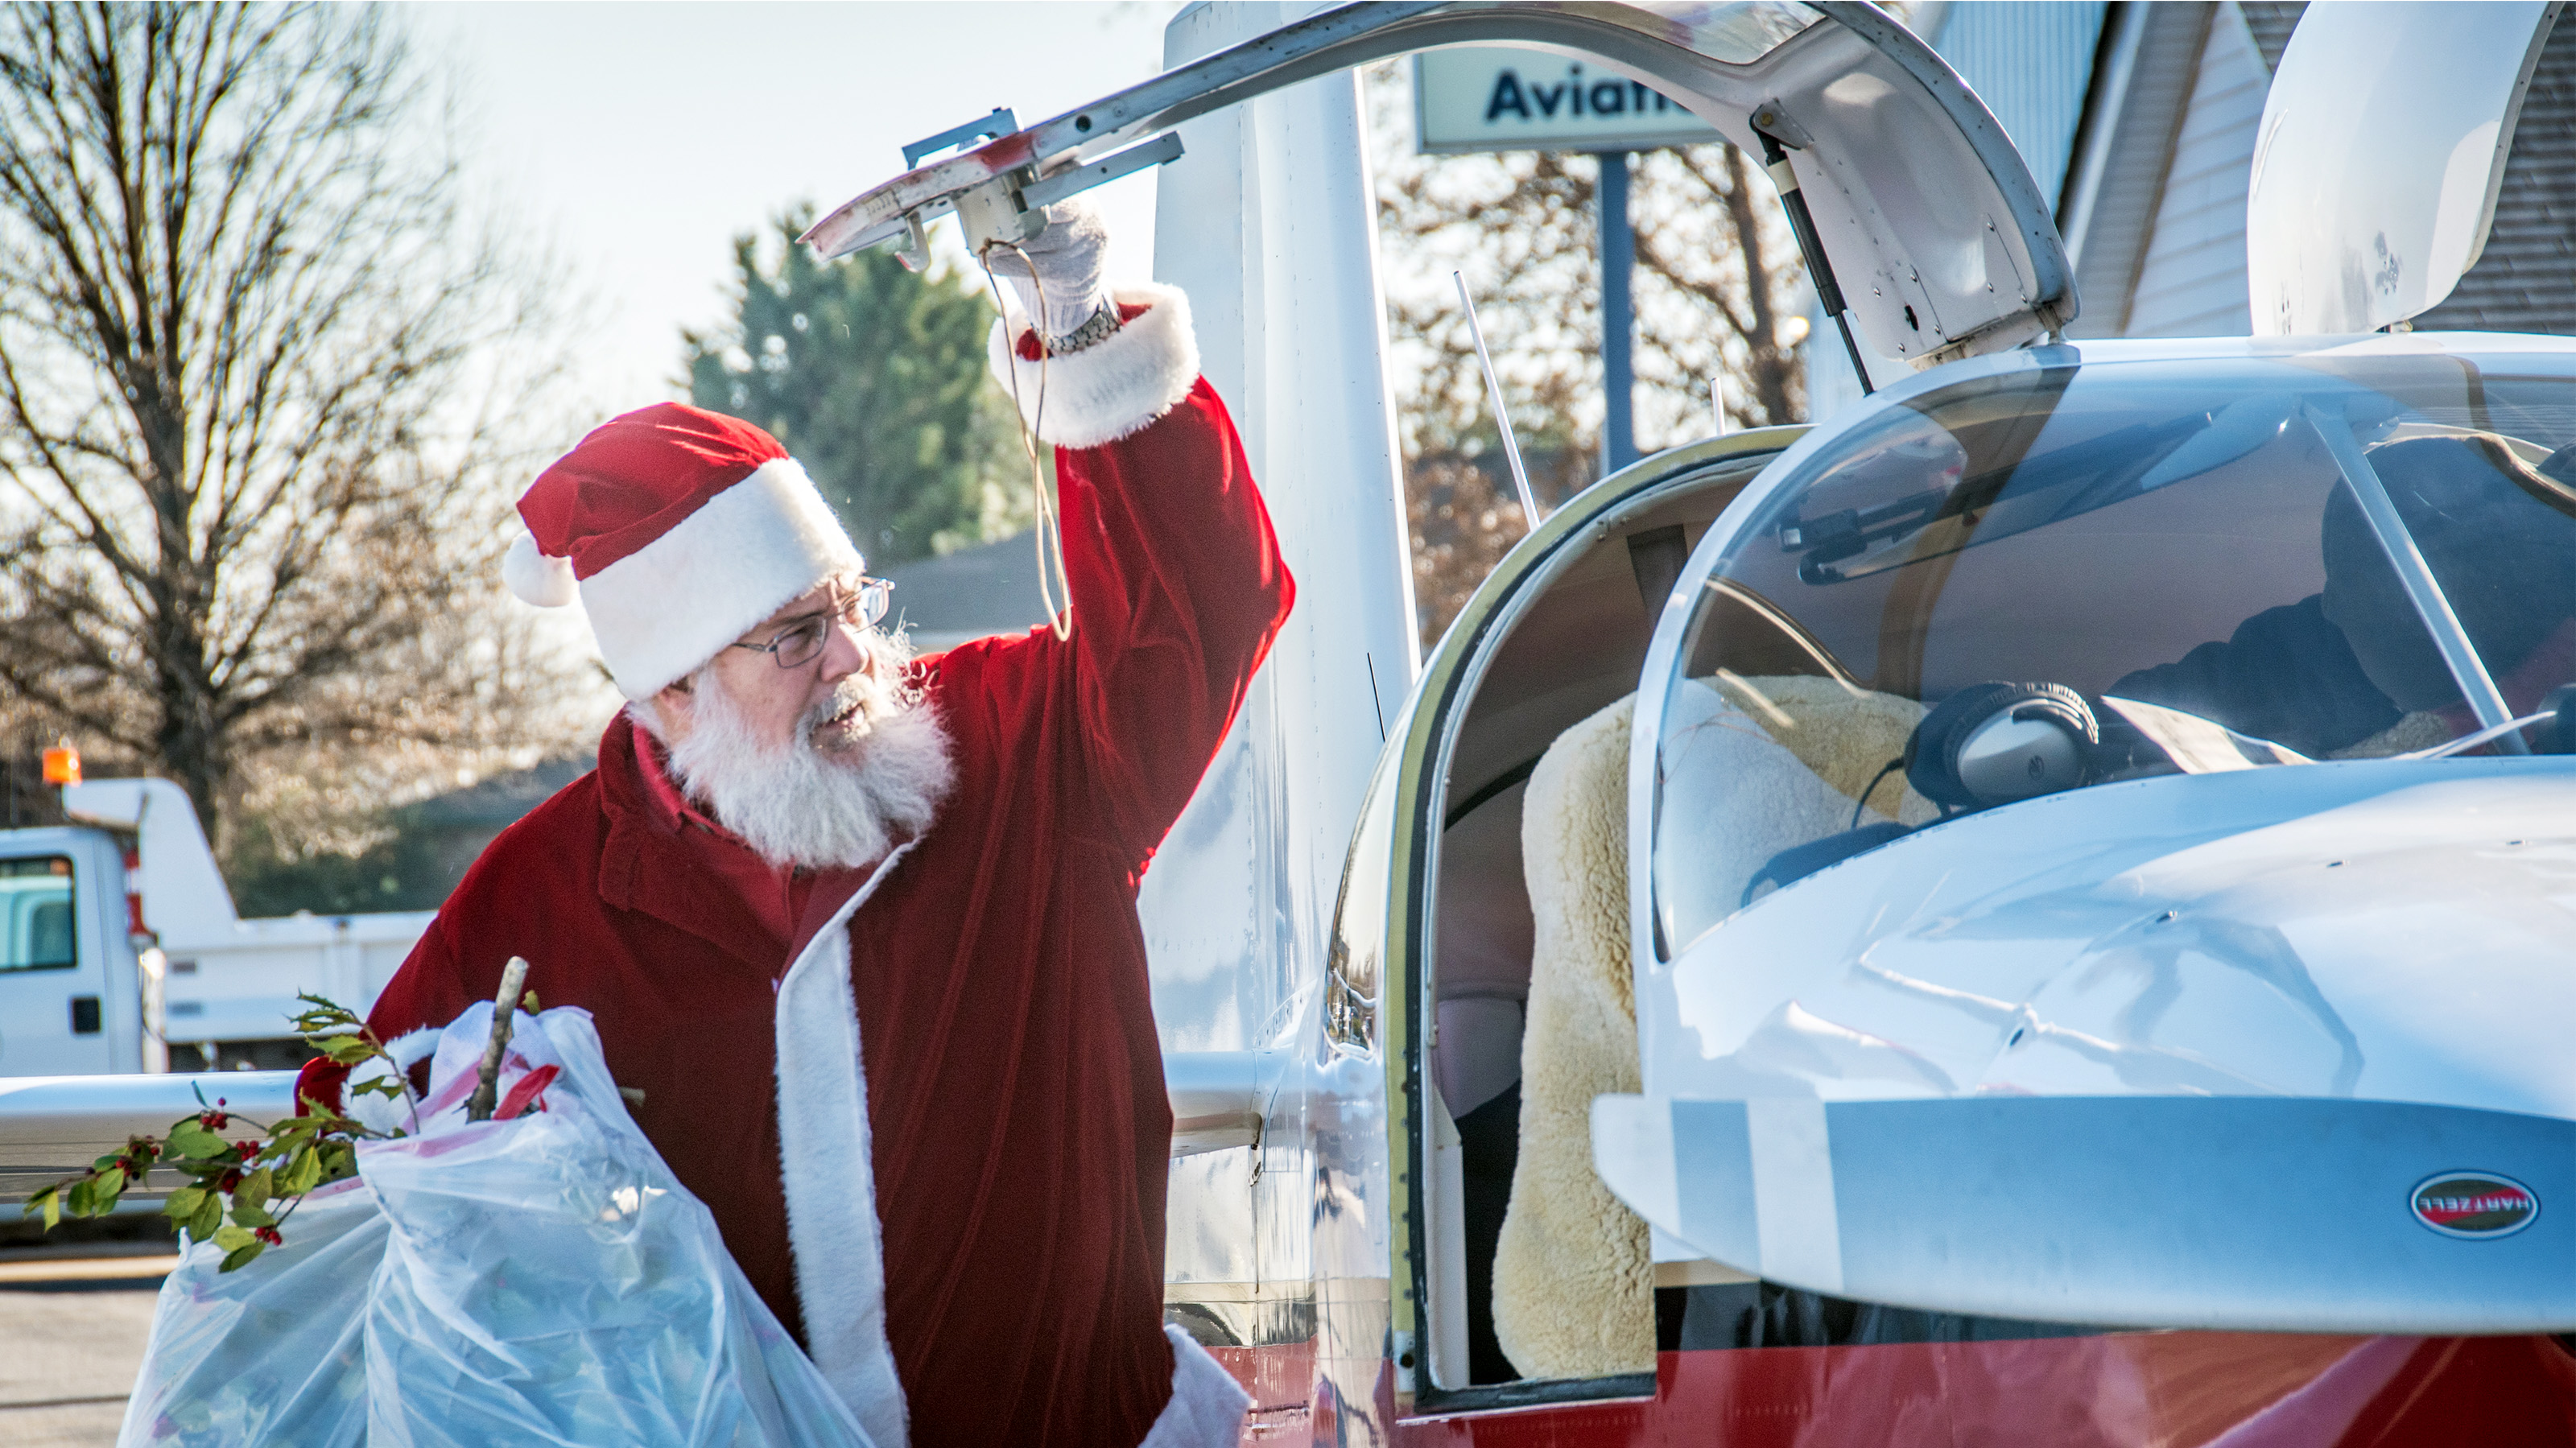 Whipping Santa: Klausjagen Festival – PILOT GUIDES